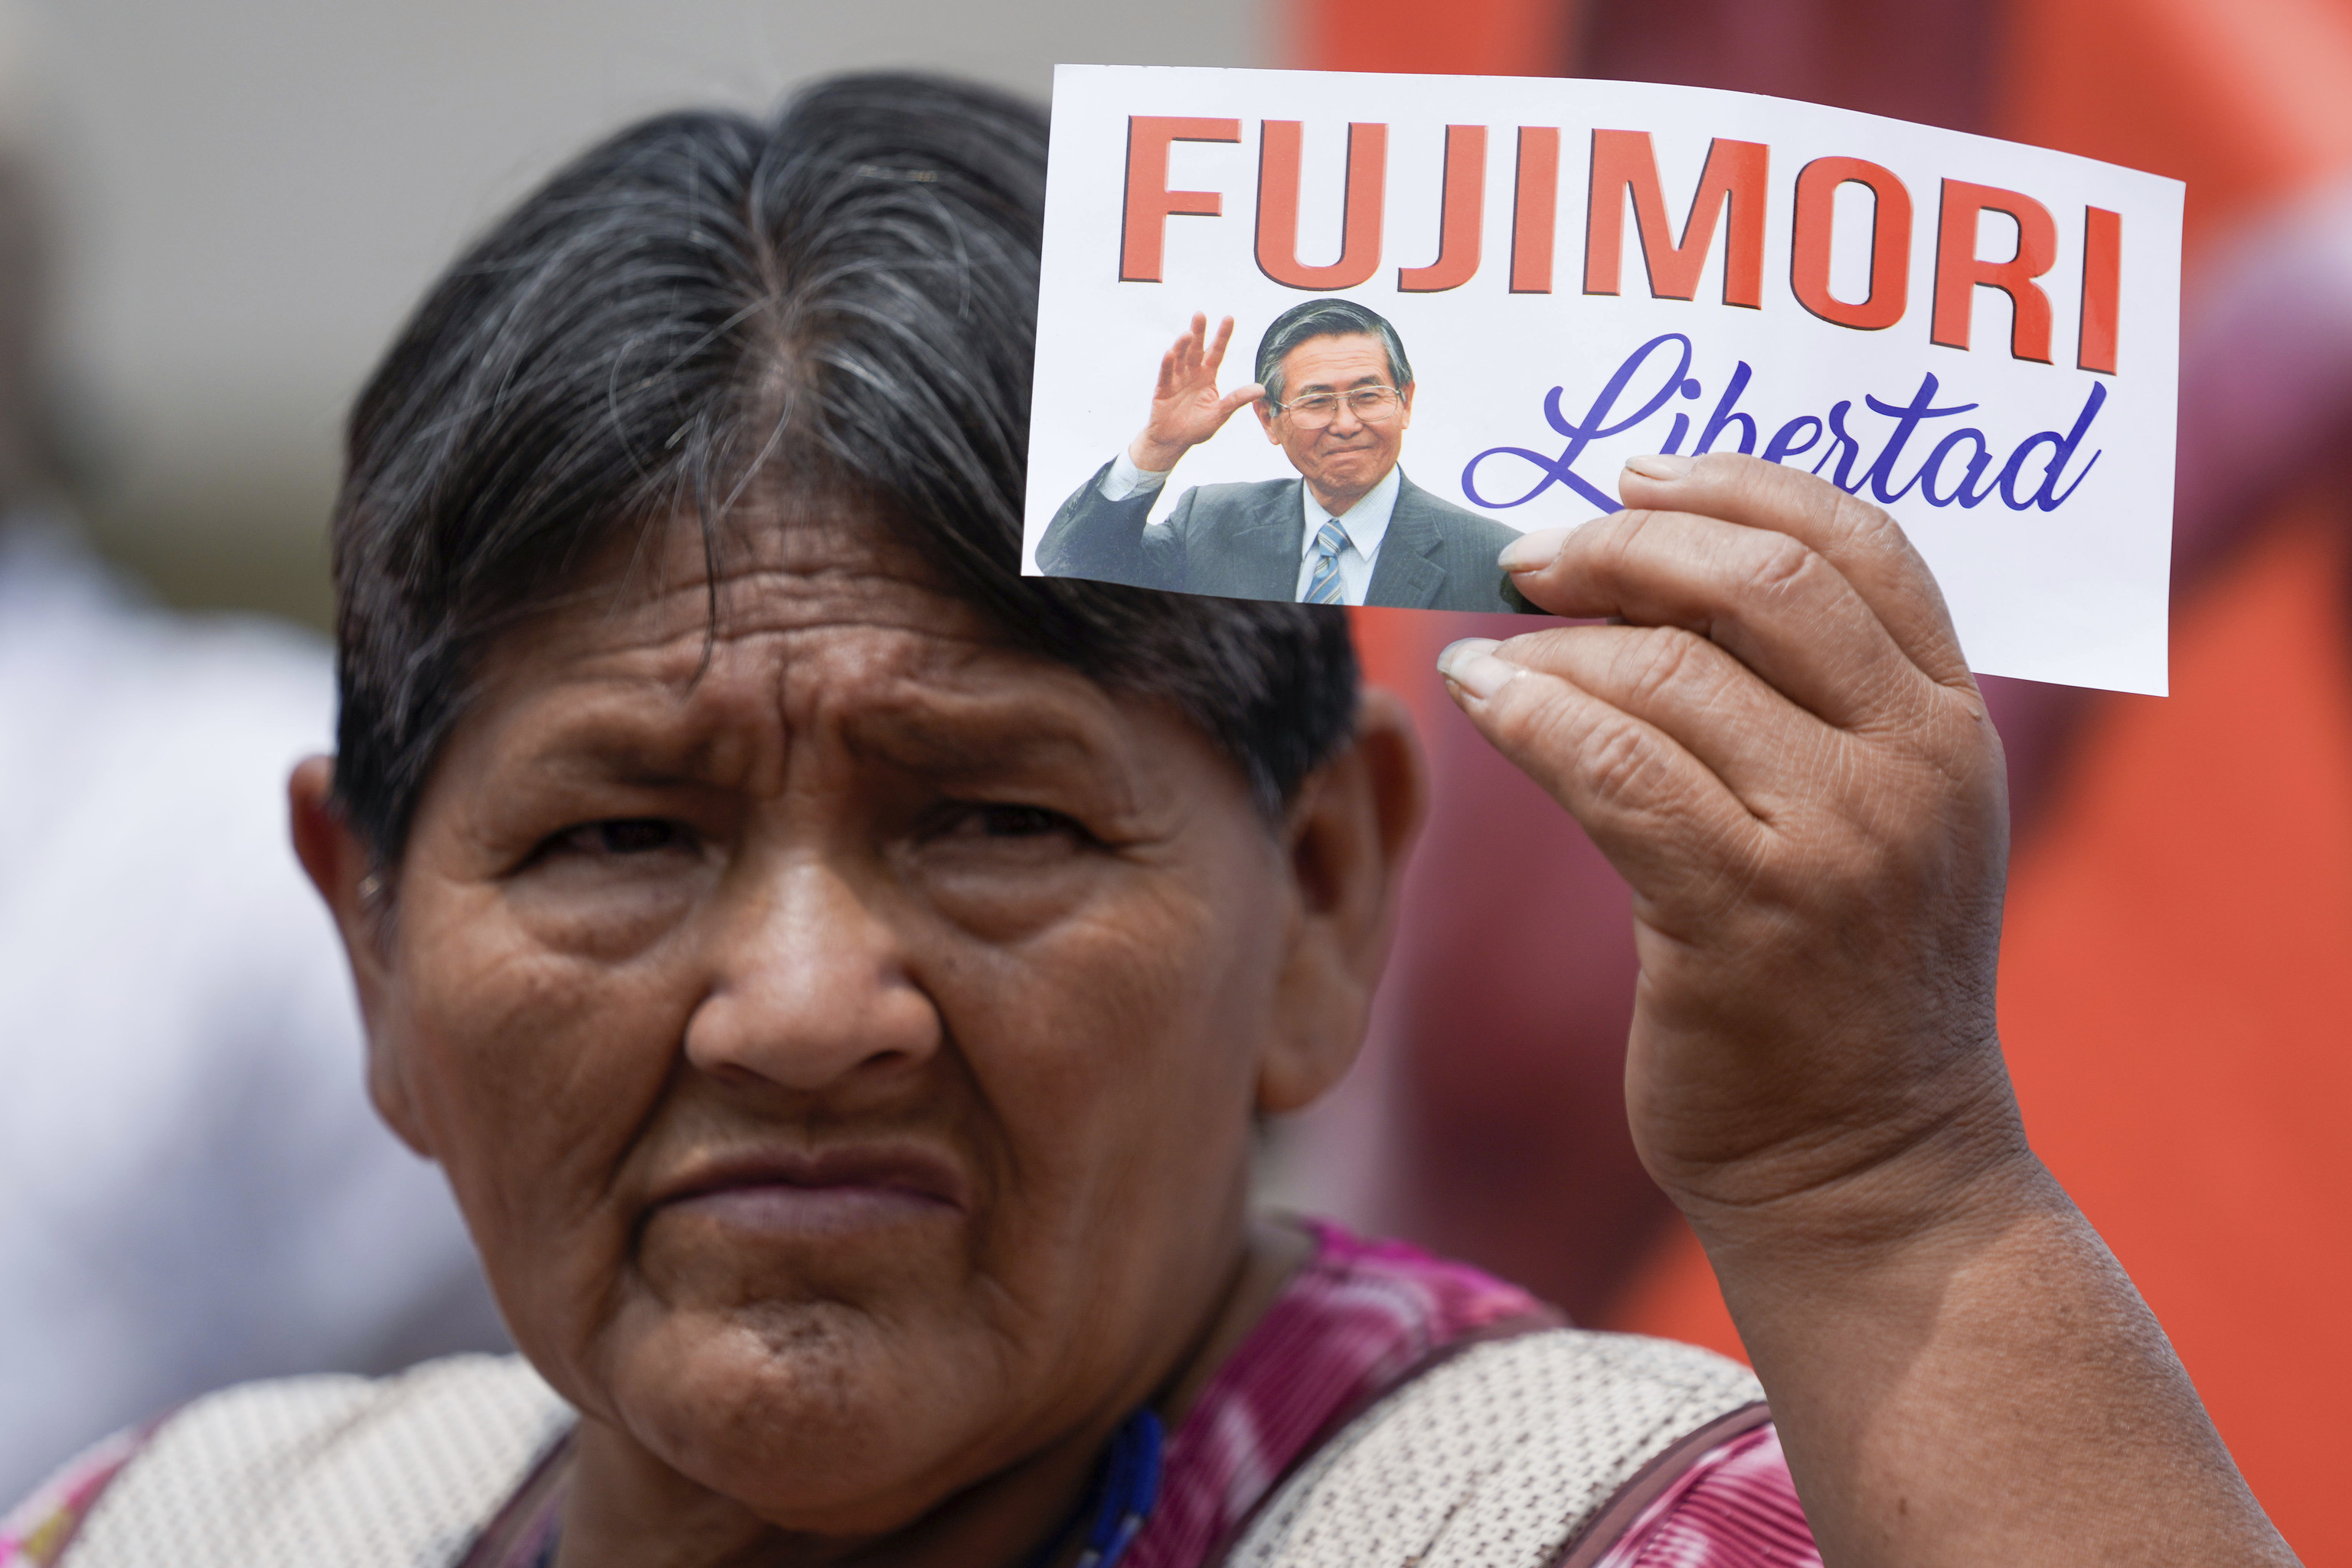 La resurrección de Alberto Fujimori provoca un terremoto político en Perú